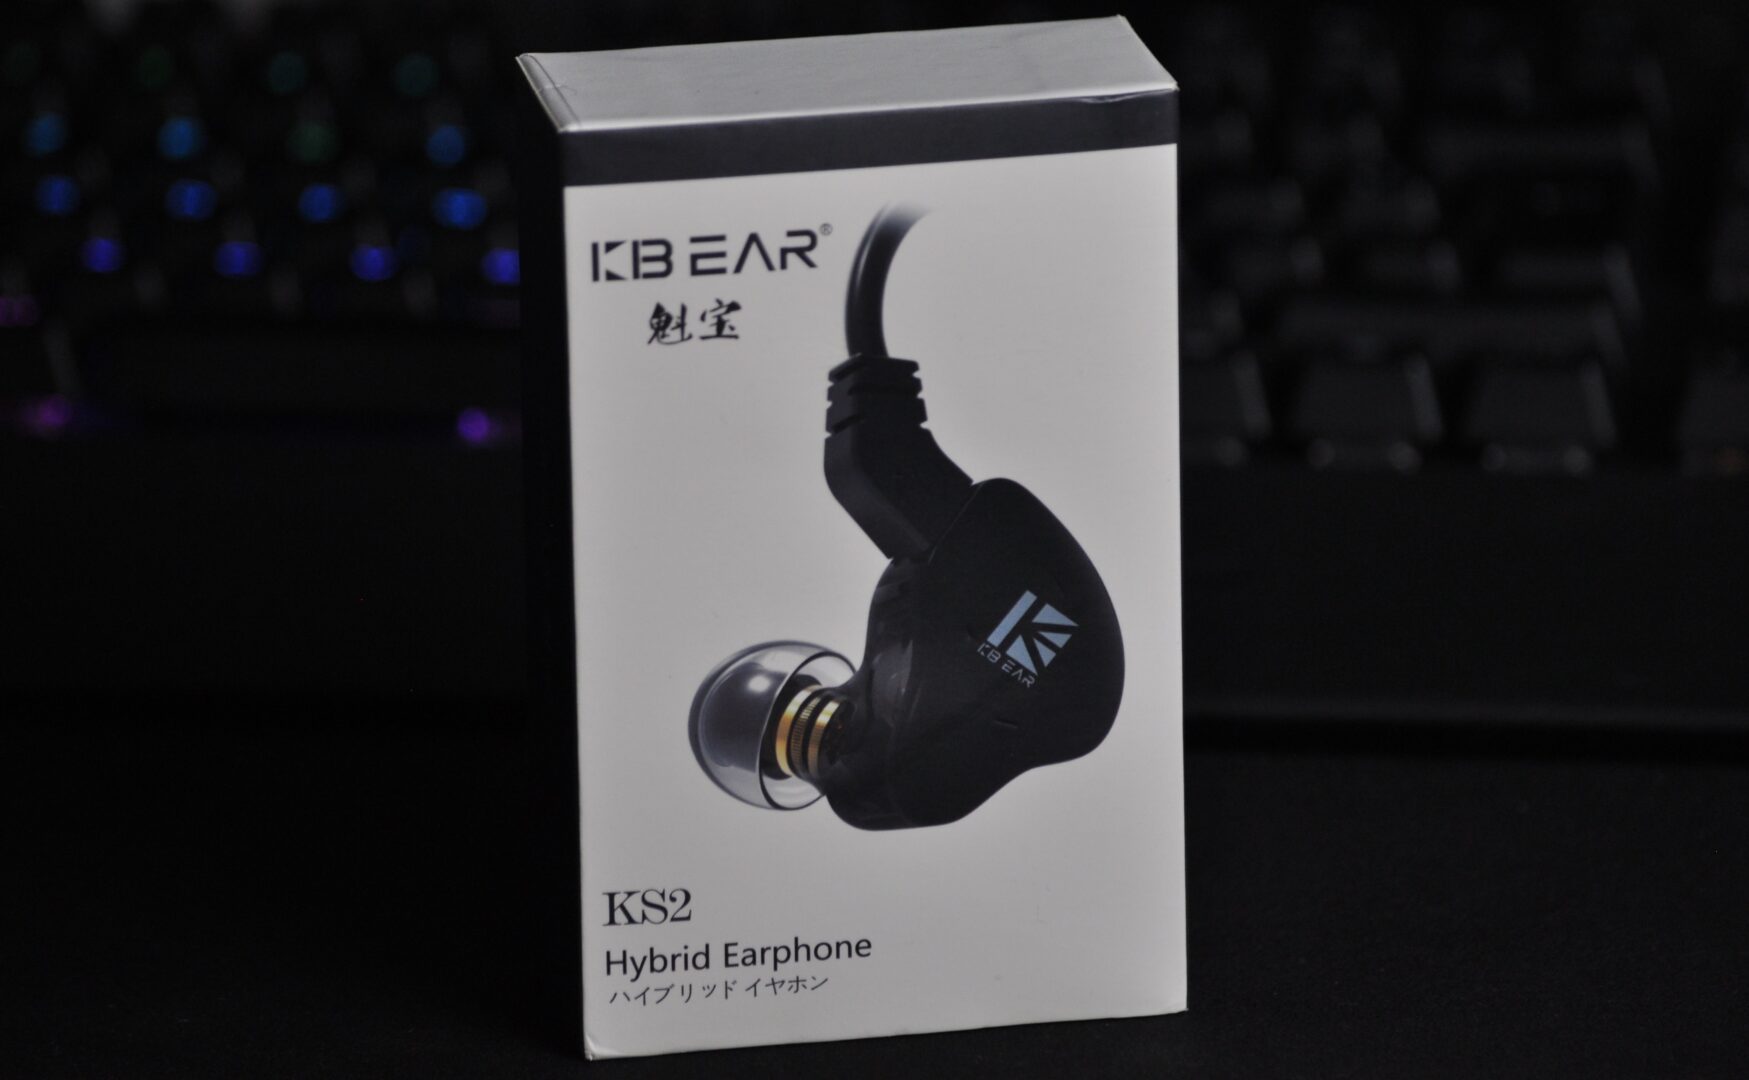 KBEAR KS2, des écouteurs hauts de gamme low-cost ?